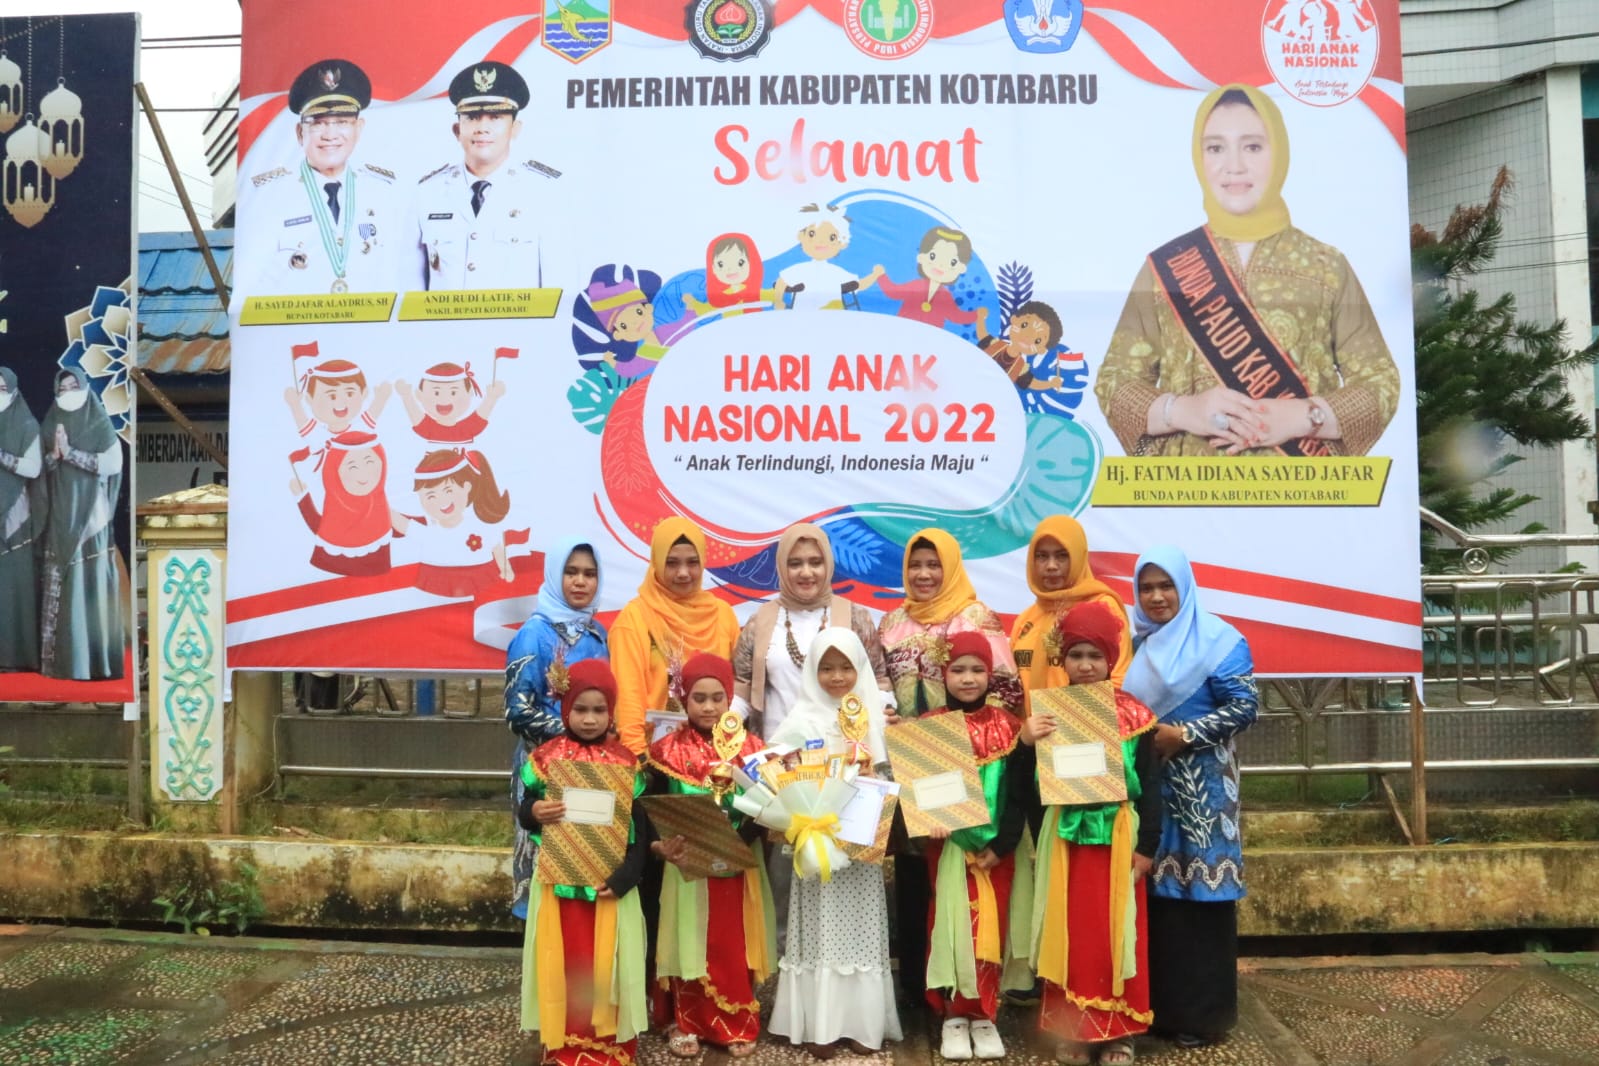 IGTKI Kabupaten Kotabaru Gelar Pawai Karnaval Dalam Rangka Hari Anak Nasional Tahun 2022